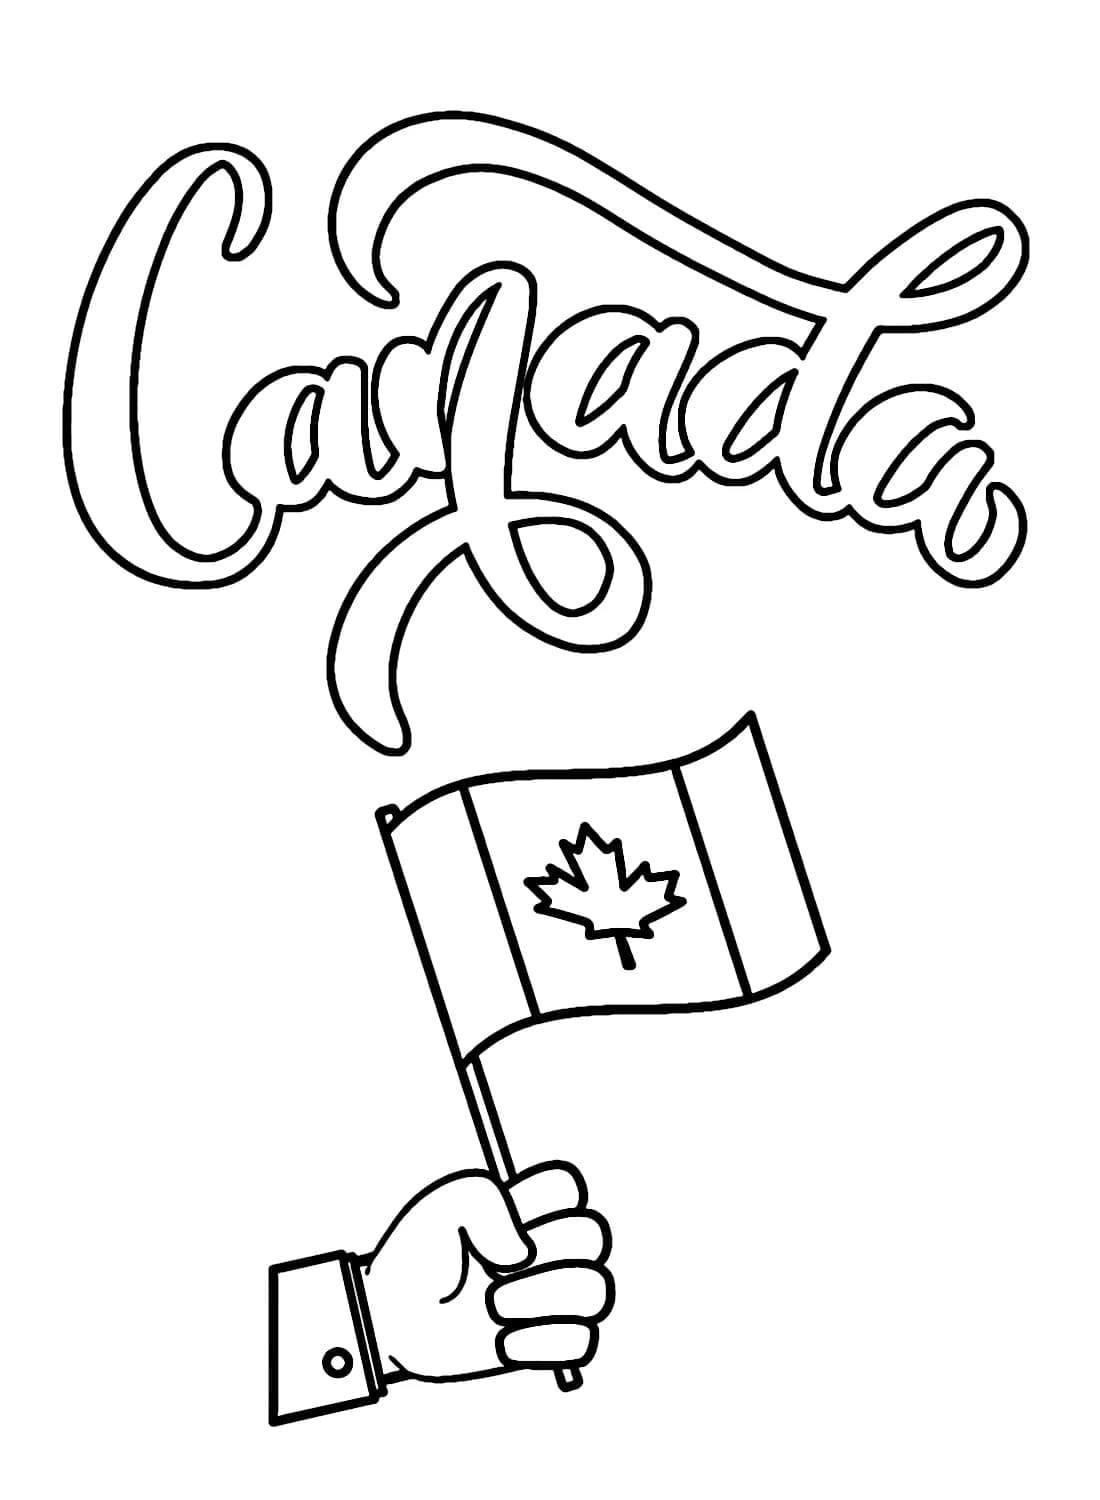 Jour du Canada coloring page